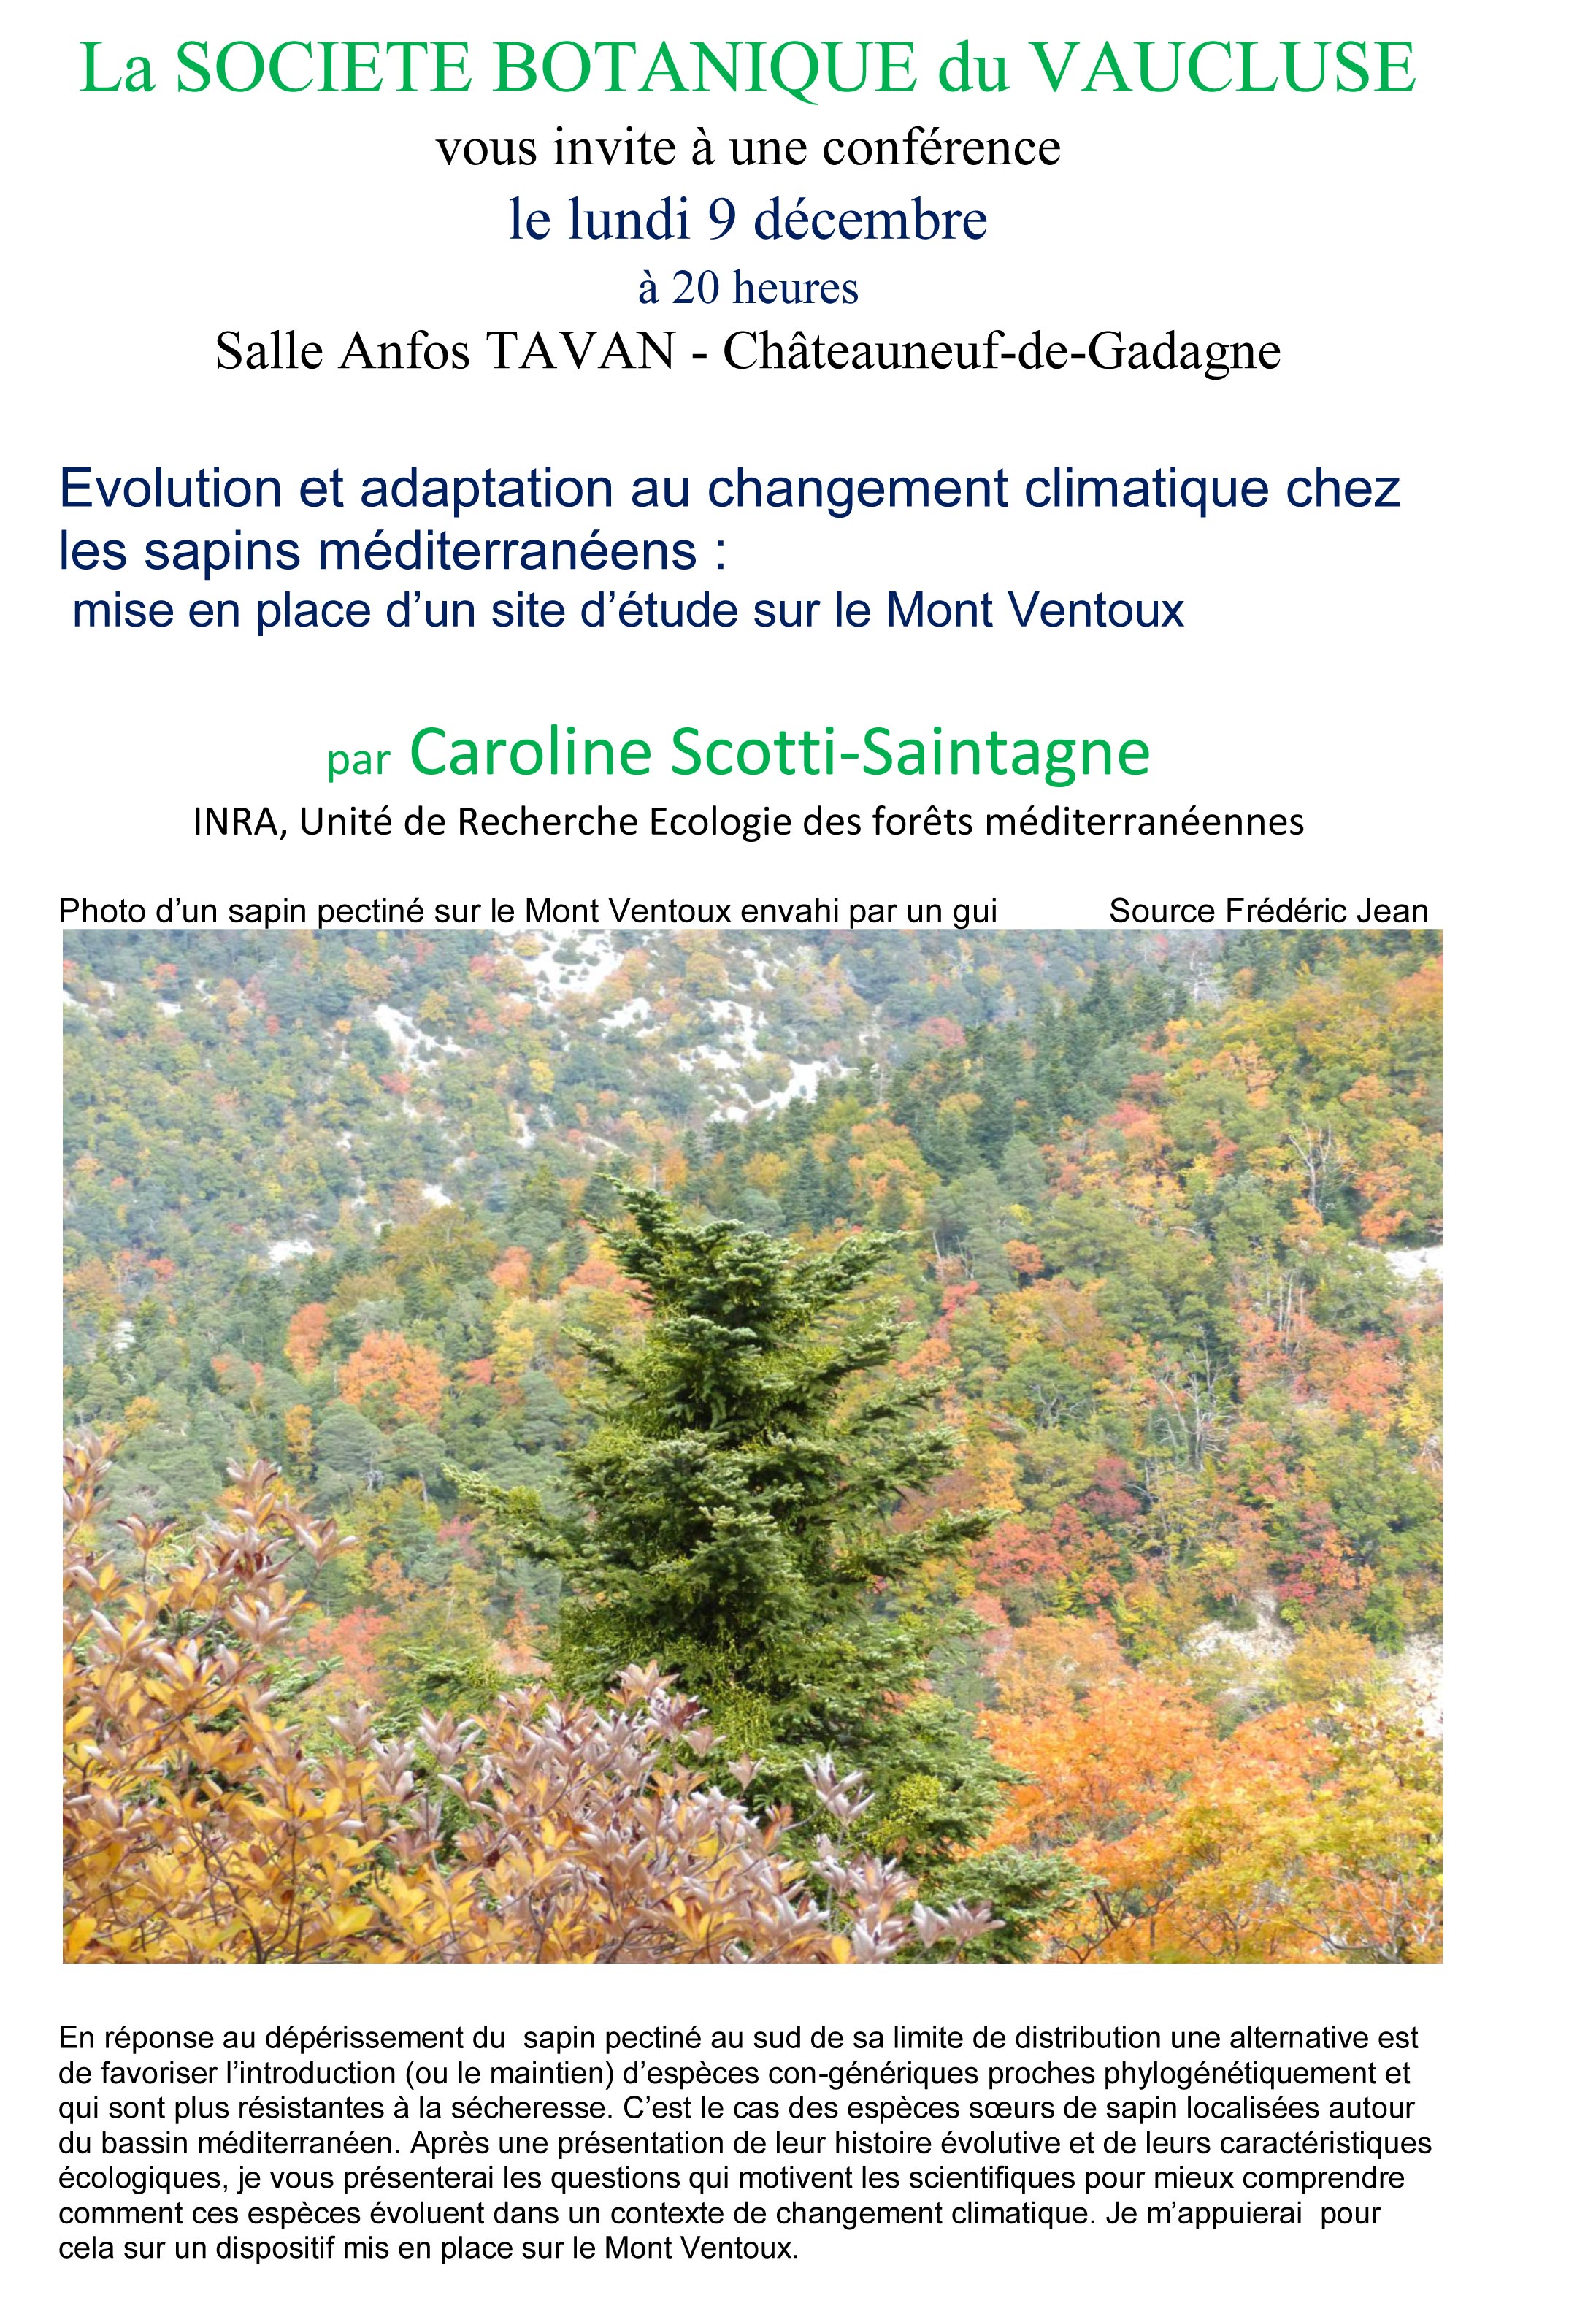 Evolution et adaptation au changement climatique chez les sapins méditerranéens :  mise en place d’un site d’étude sur le Mont Ventoux